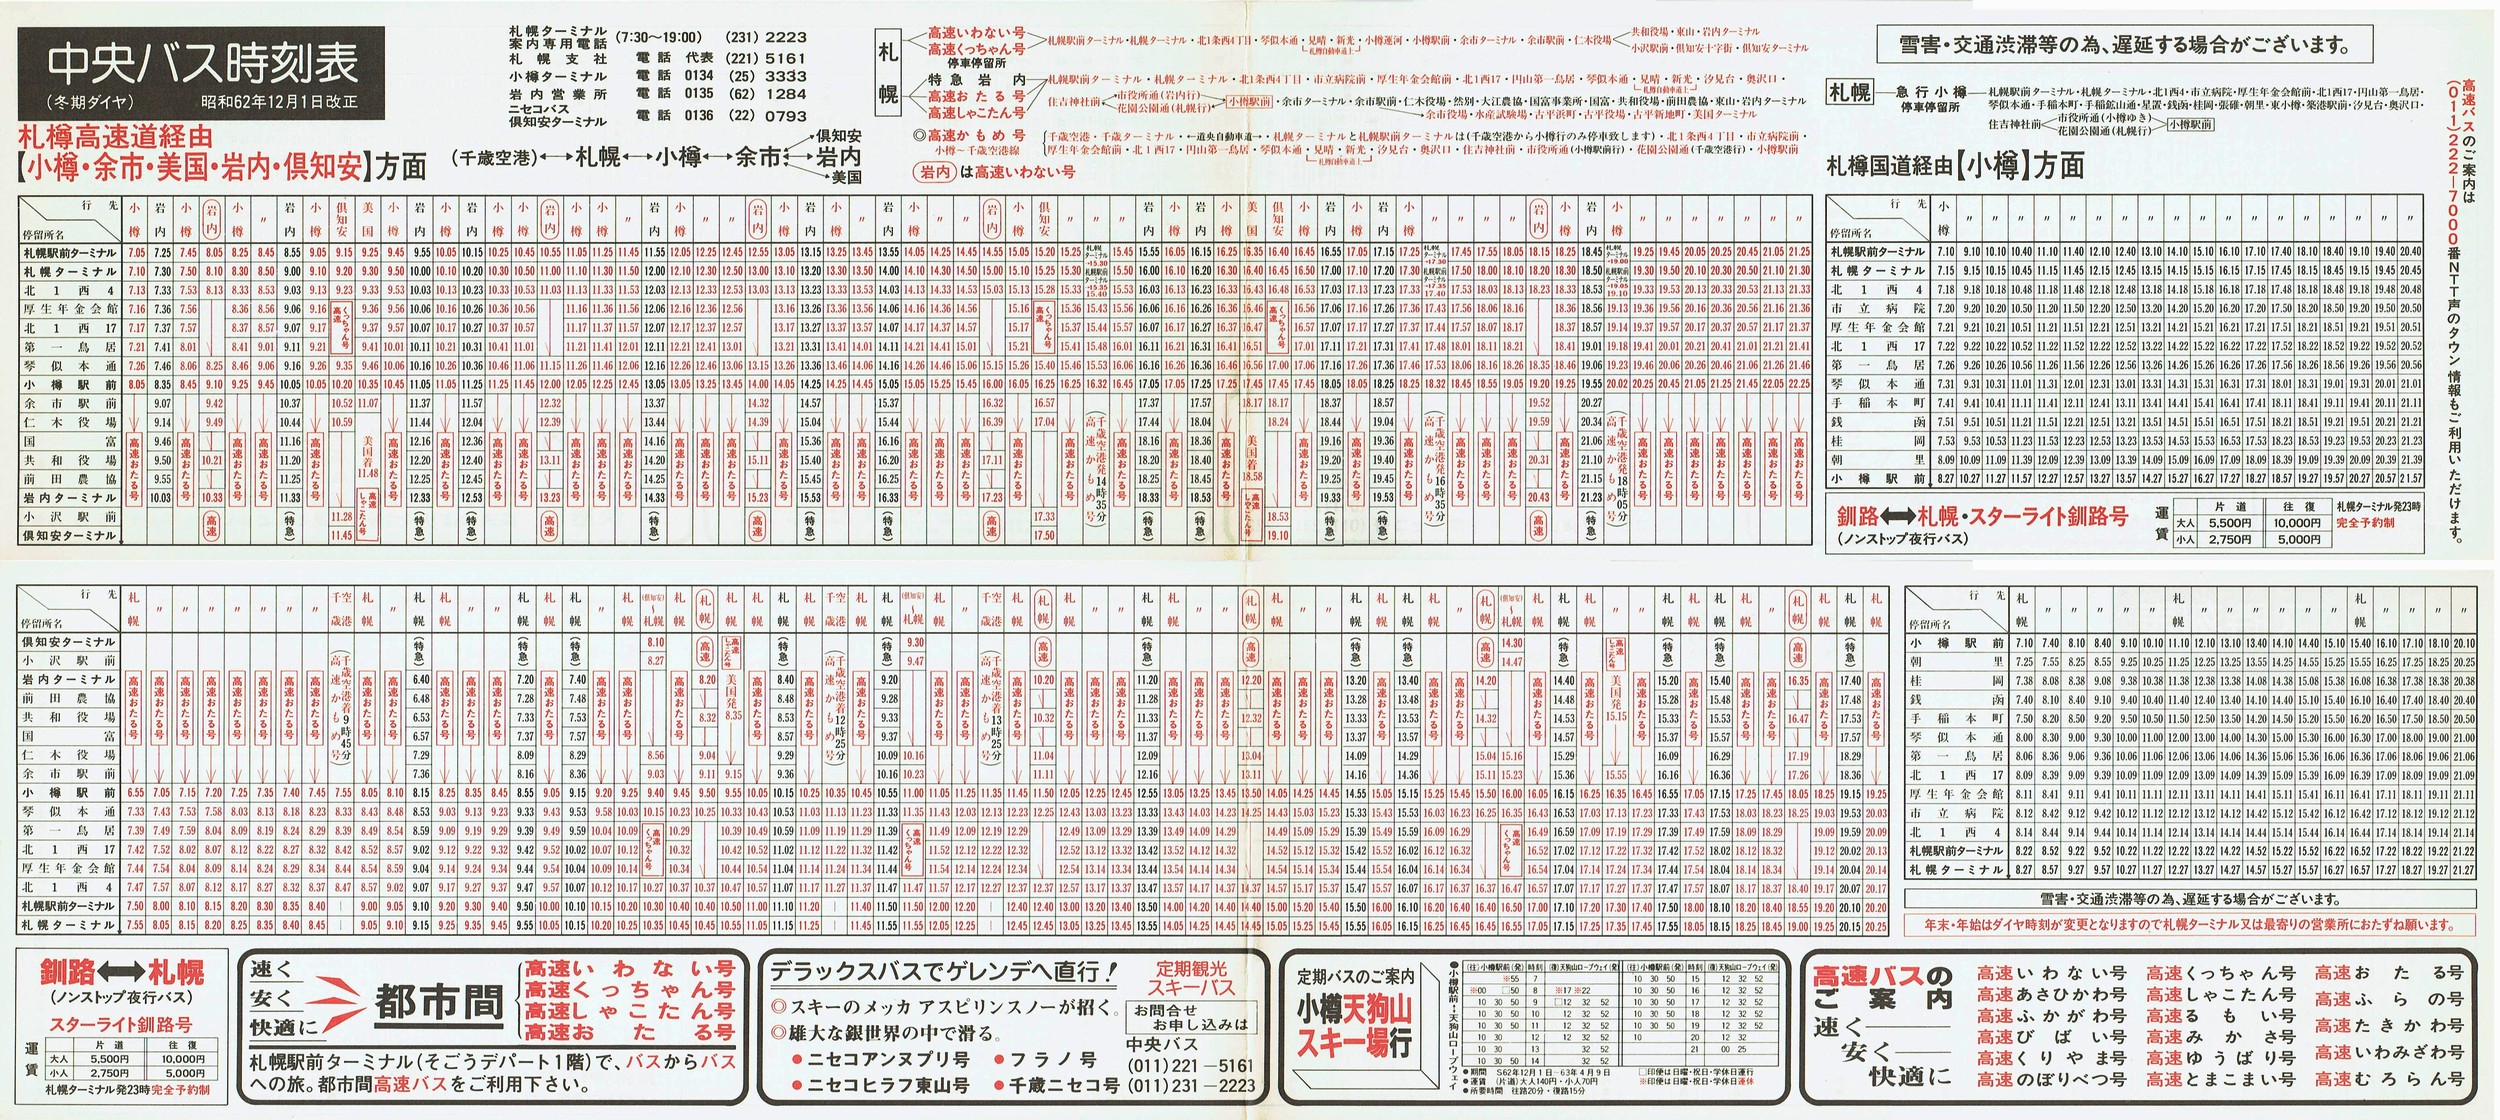 1987-12-01改正_北海道中央バス(札幌)_小樽・美国・岩内・倶知安方面時刻表